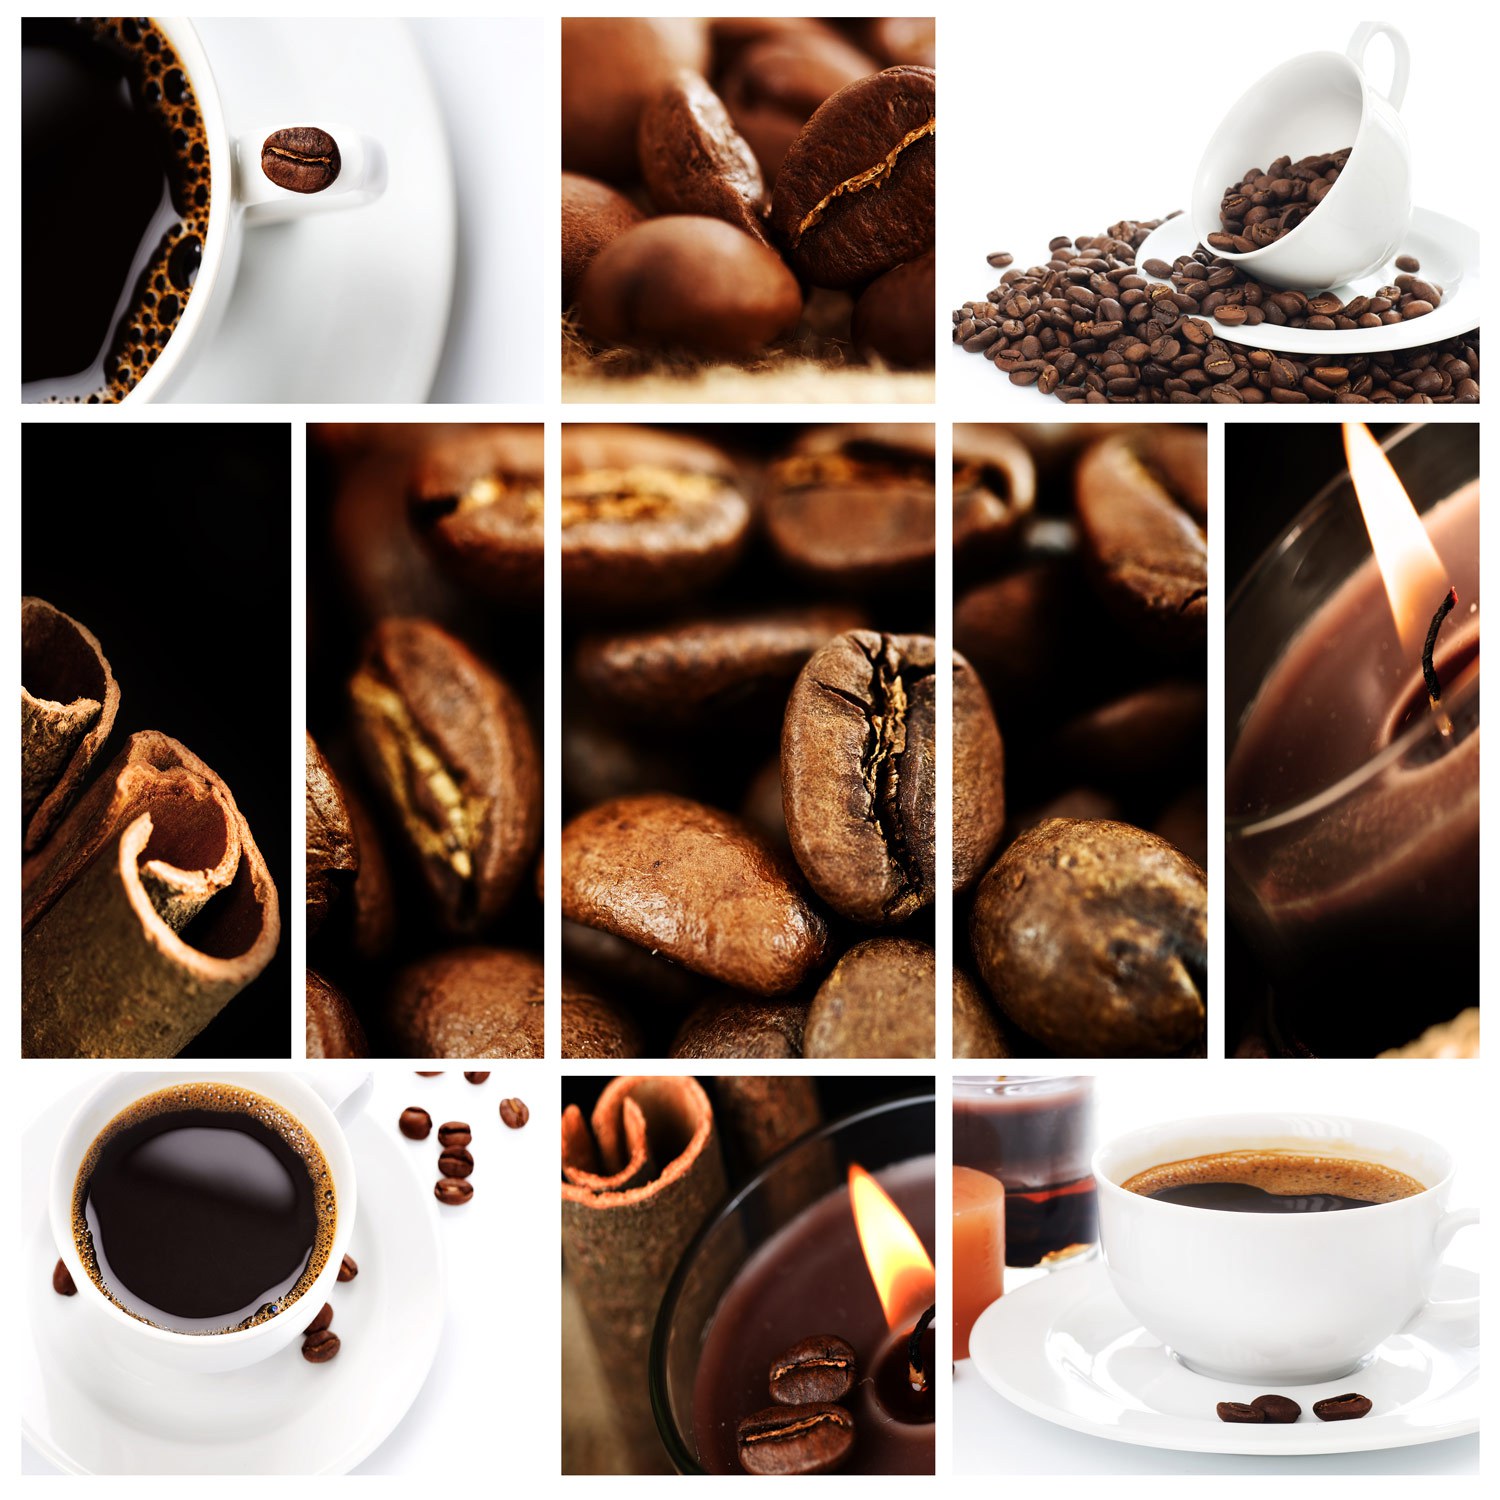 世界各地咖啡豆的詳細分類及介紹-咖啡新手入門學